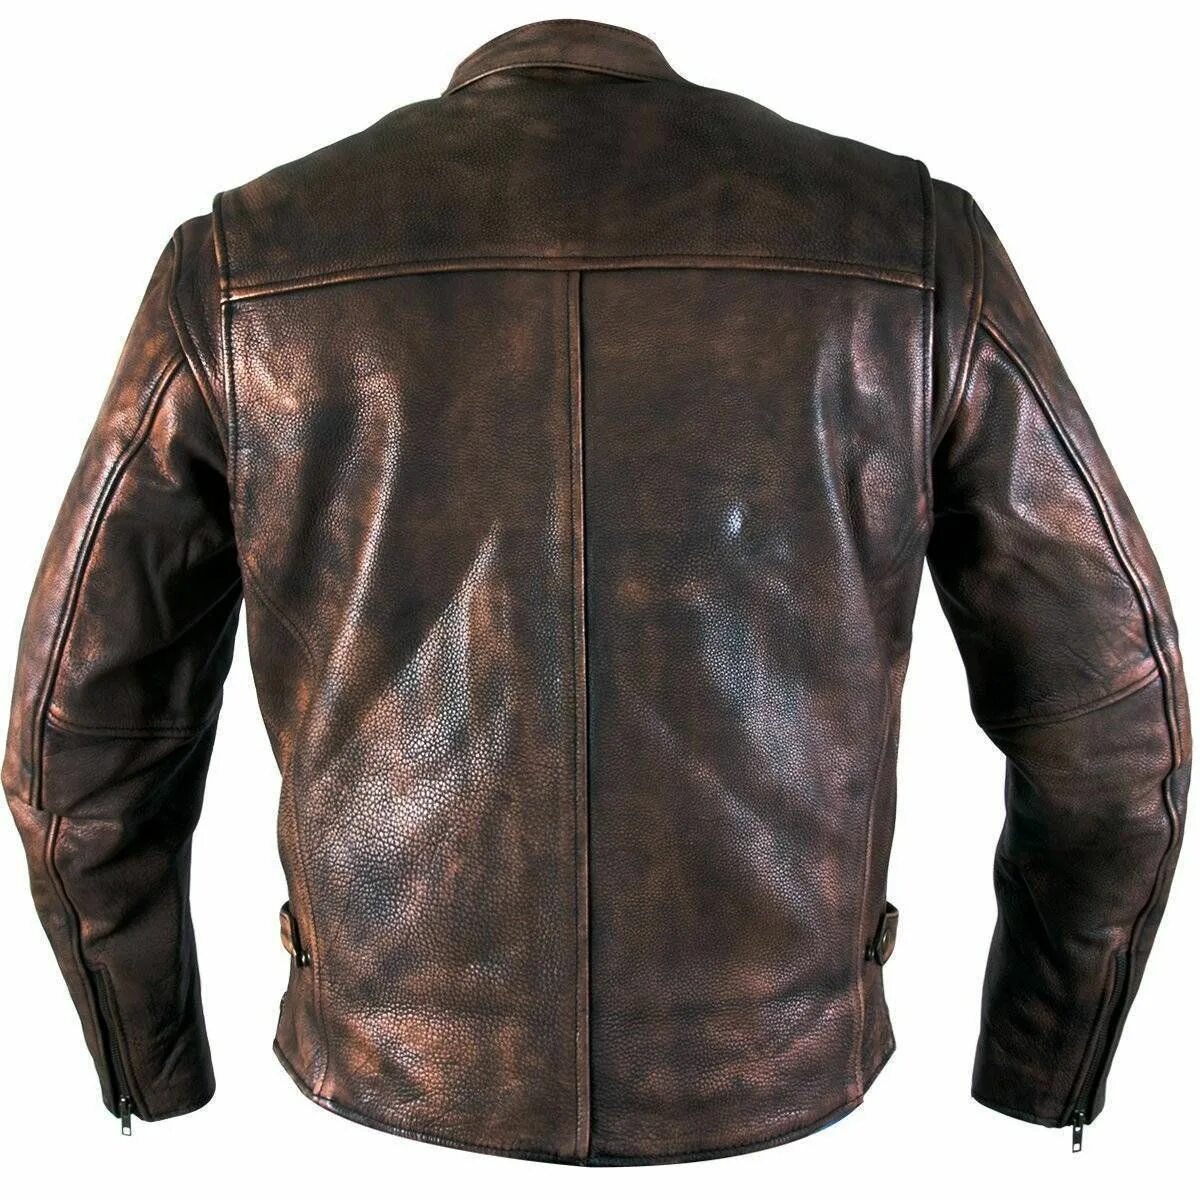 Мужская кожаная куртка тула. Косуха Xelement. Кожаные куртки Xelement. Tomahawk Leather куртка. Daytona Racer Spirit since 1973 куртка кожаная.